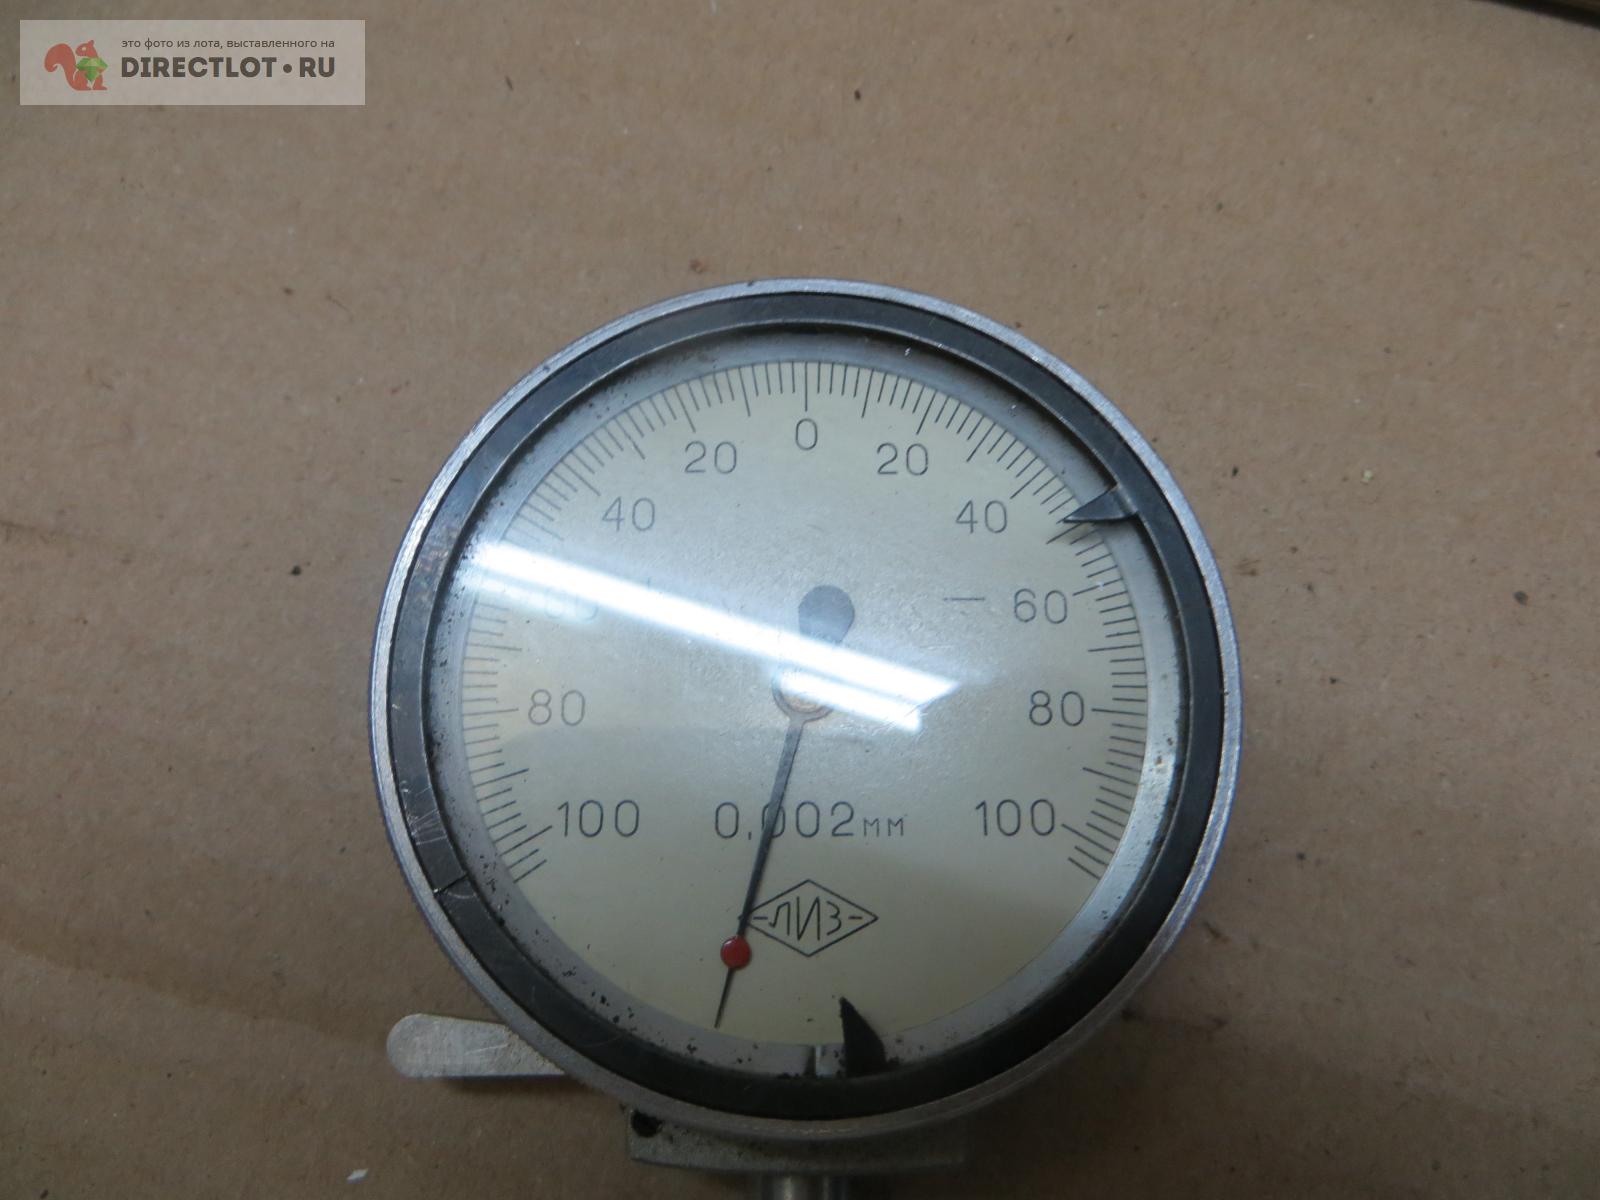  часовой, ЛИЗ, 0,002 мм.  в Пензе цена 600 Р на .